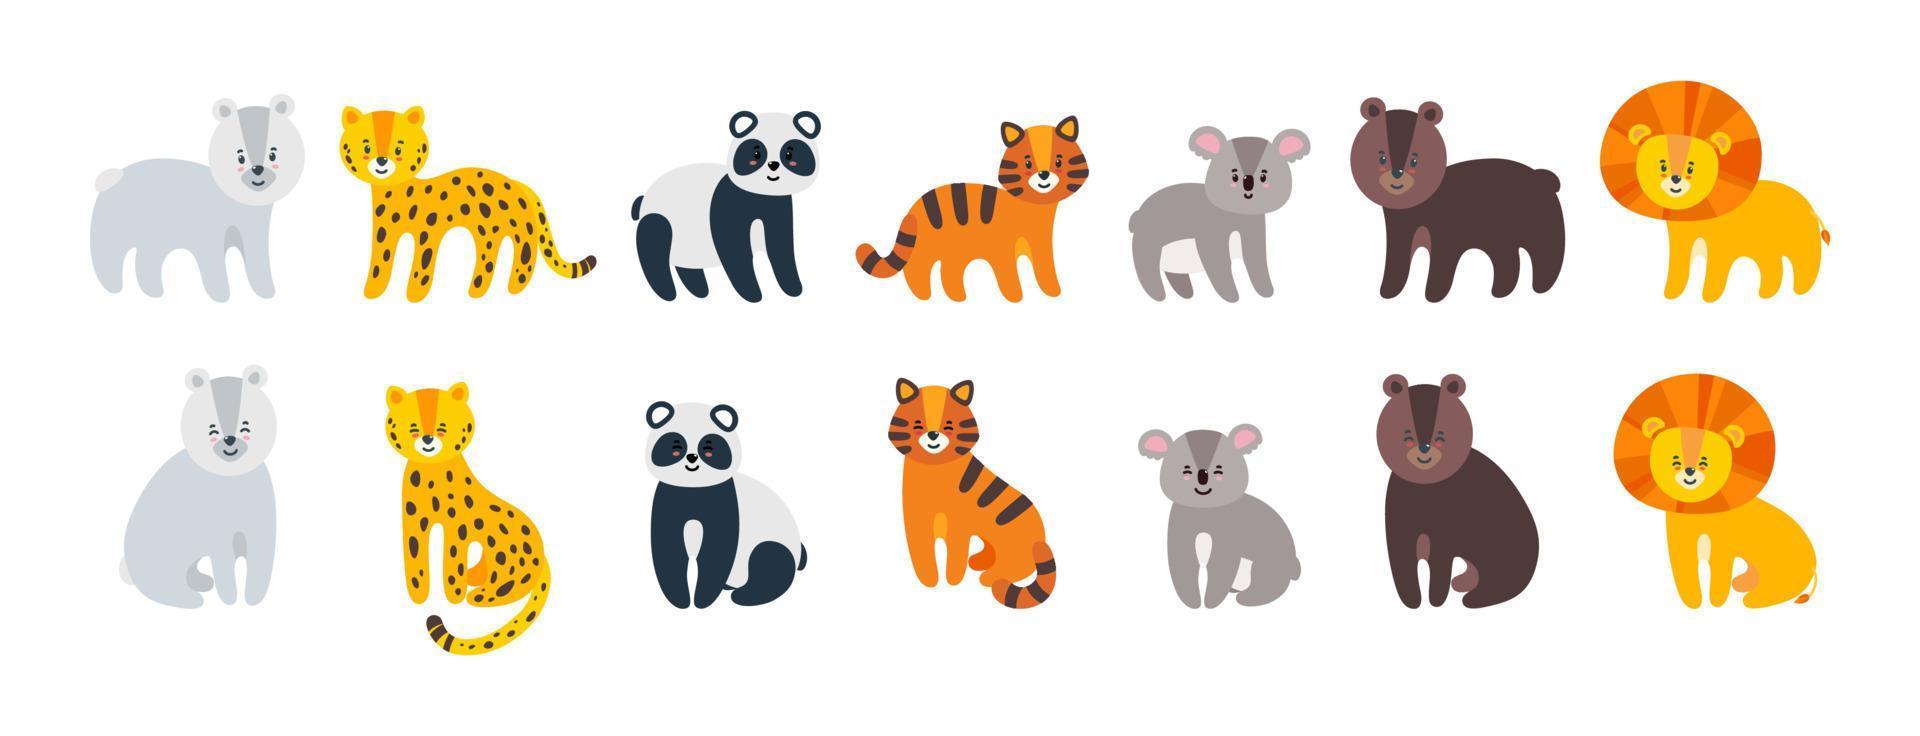 ensemble d'animaux sauvages. léopard, lion, tigre, ours, panda et koala isolés sur fond blanc. illustration vectorielle dans un style plat vecteur